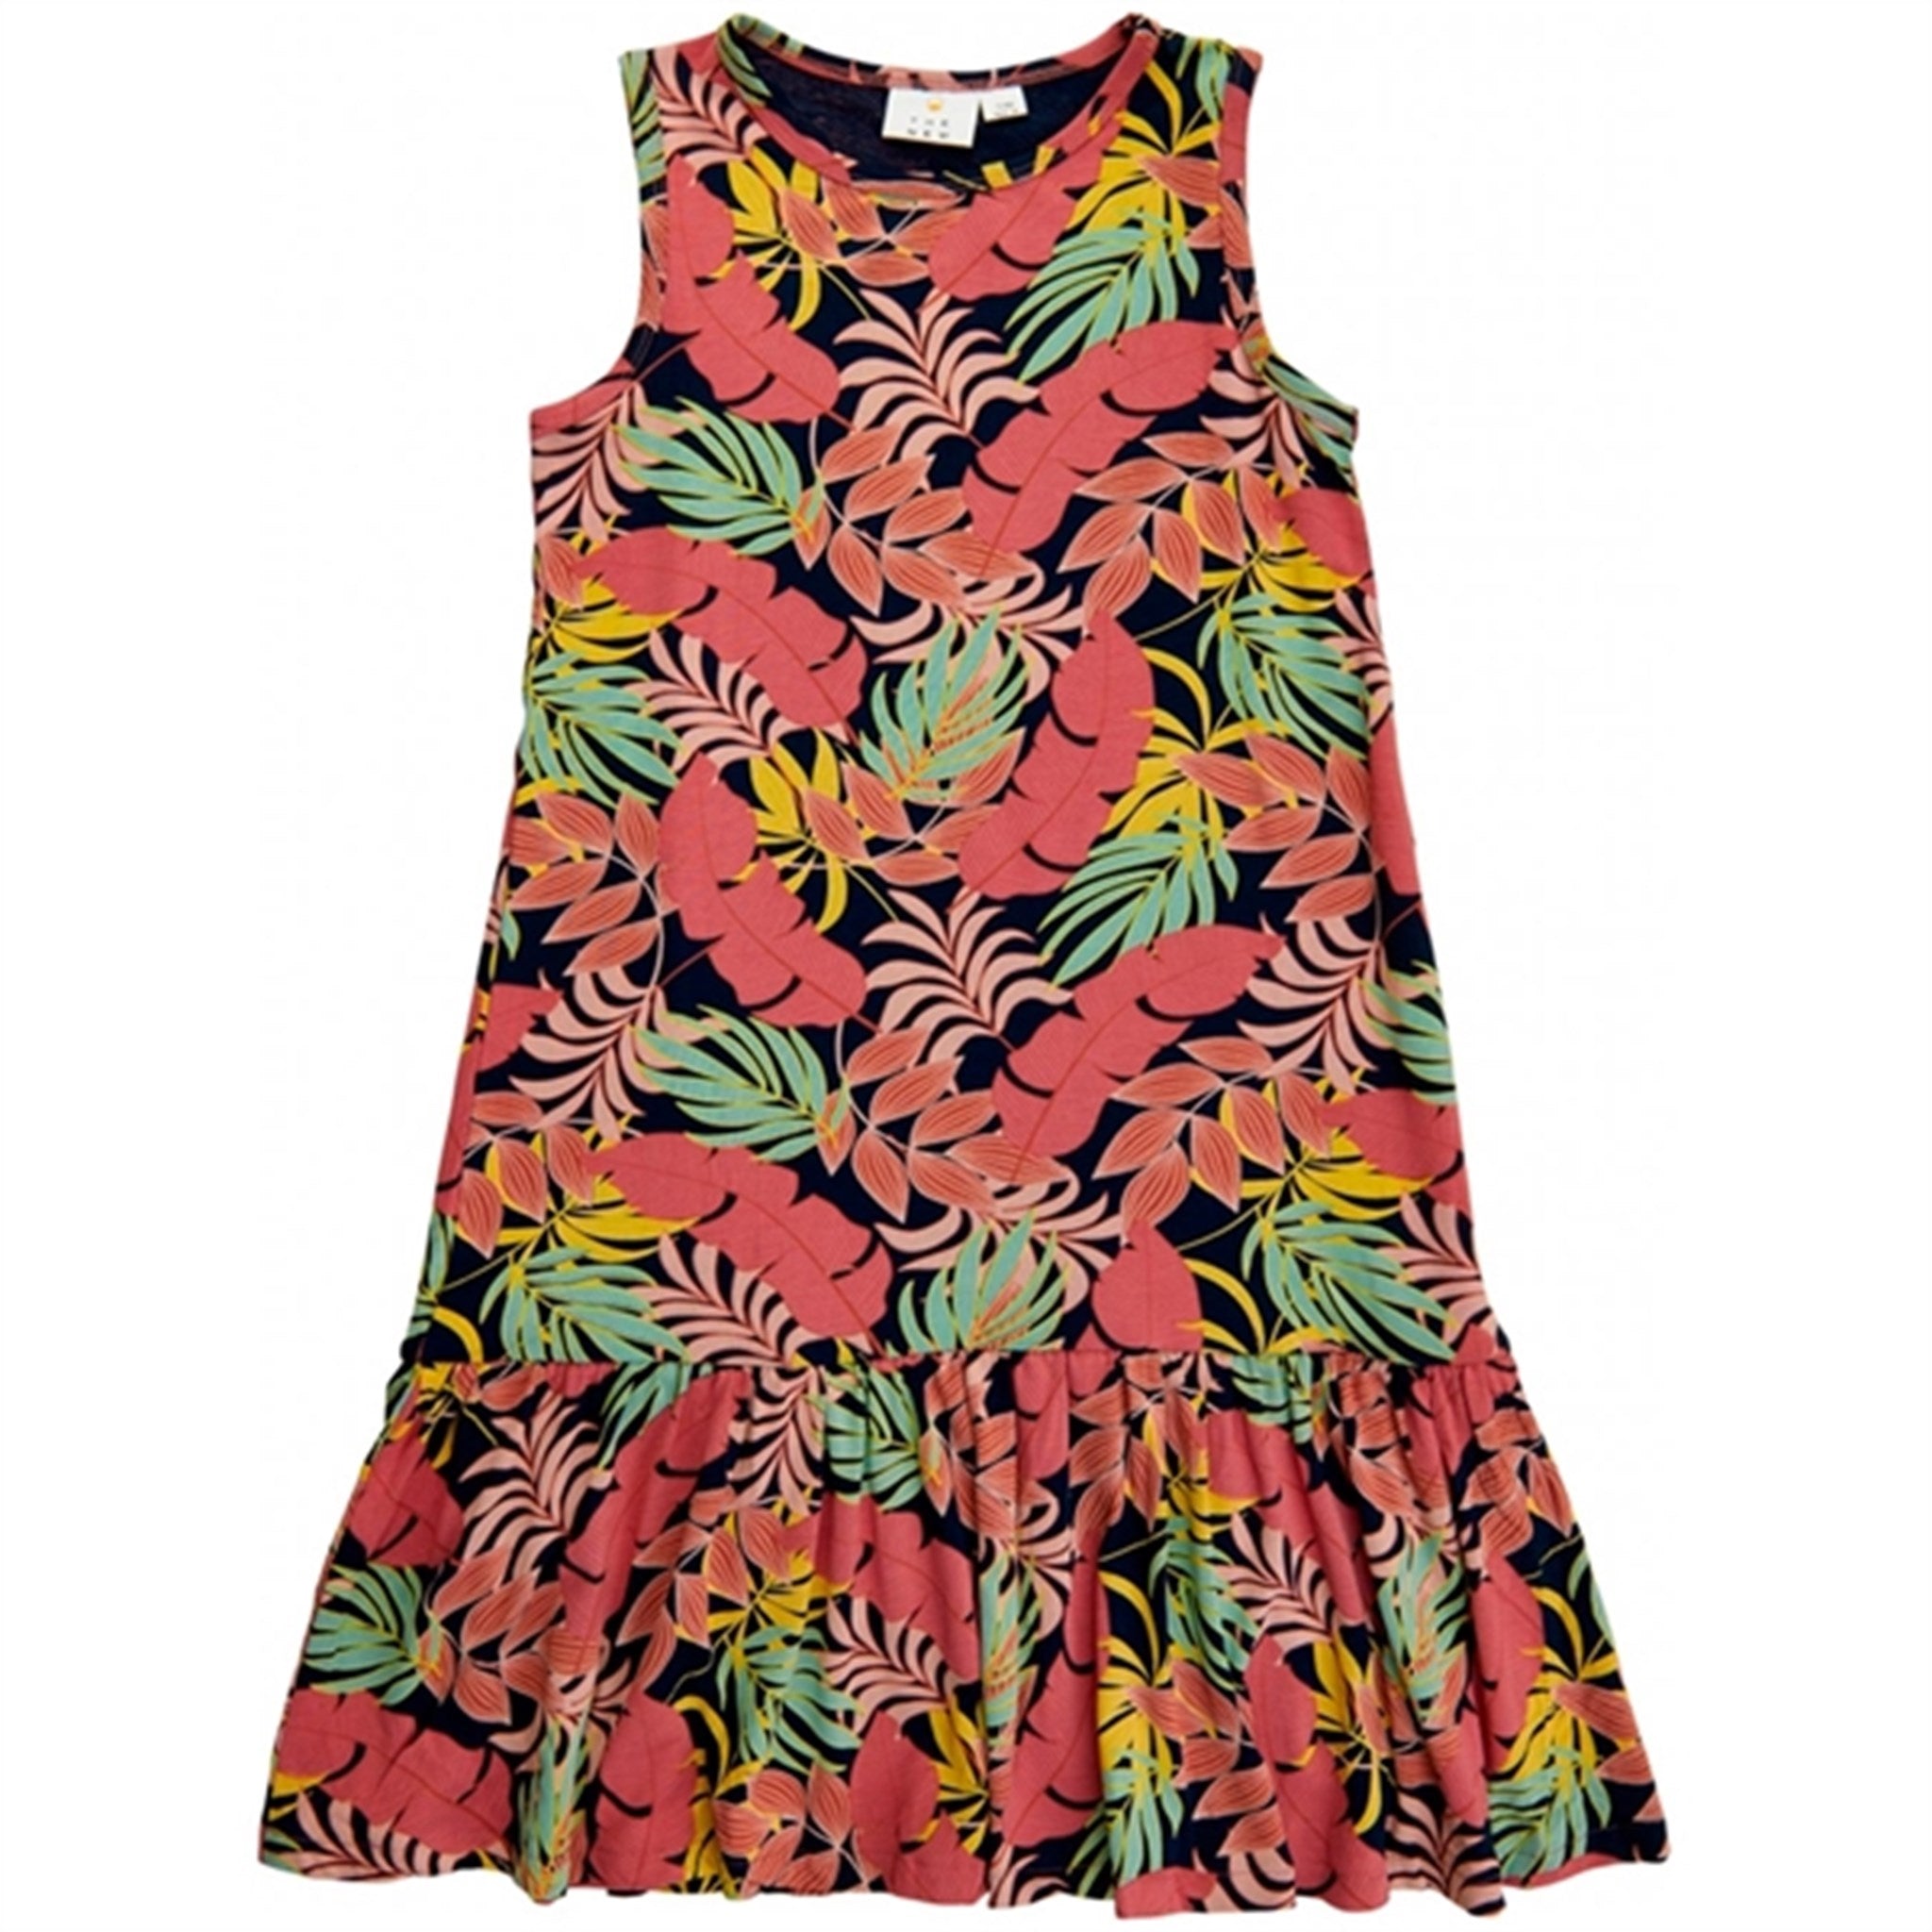 The New Tropic AOP Calypso Dress